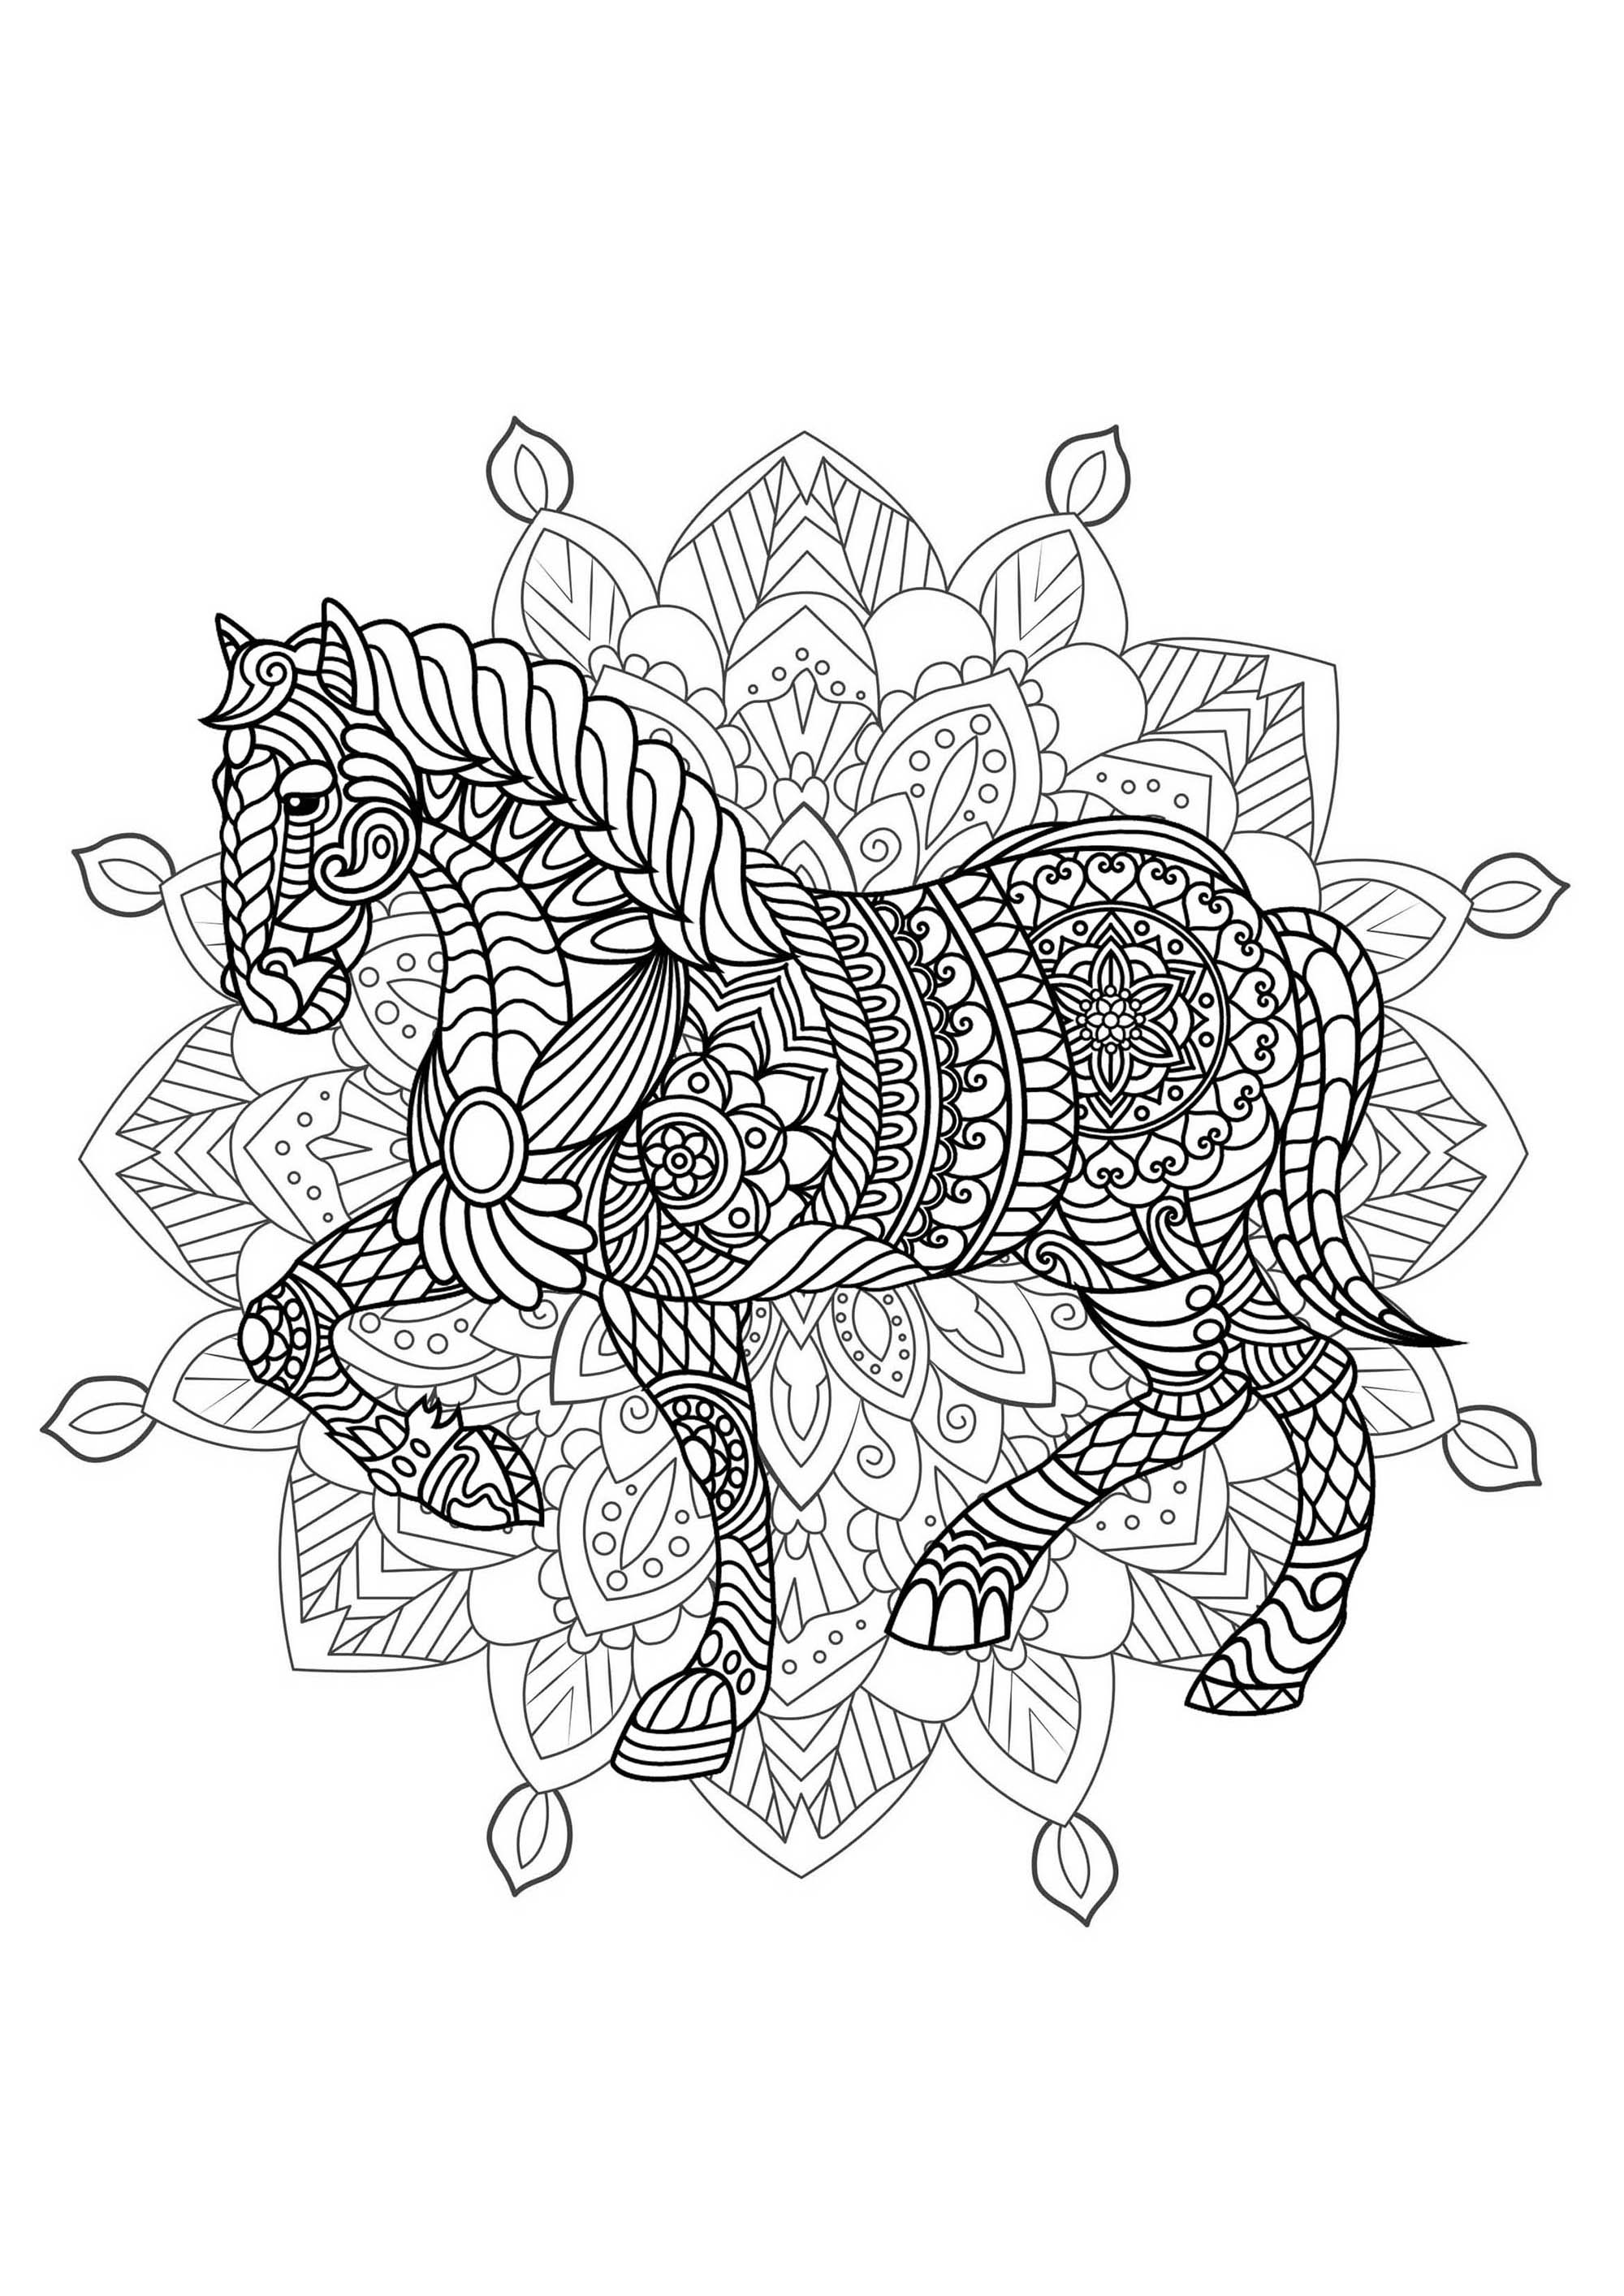 Mandala para colorear con hermosos Caballos y complejos dibujos de fondo